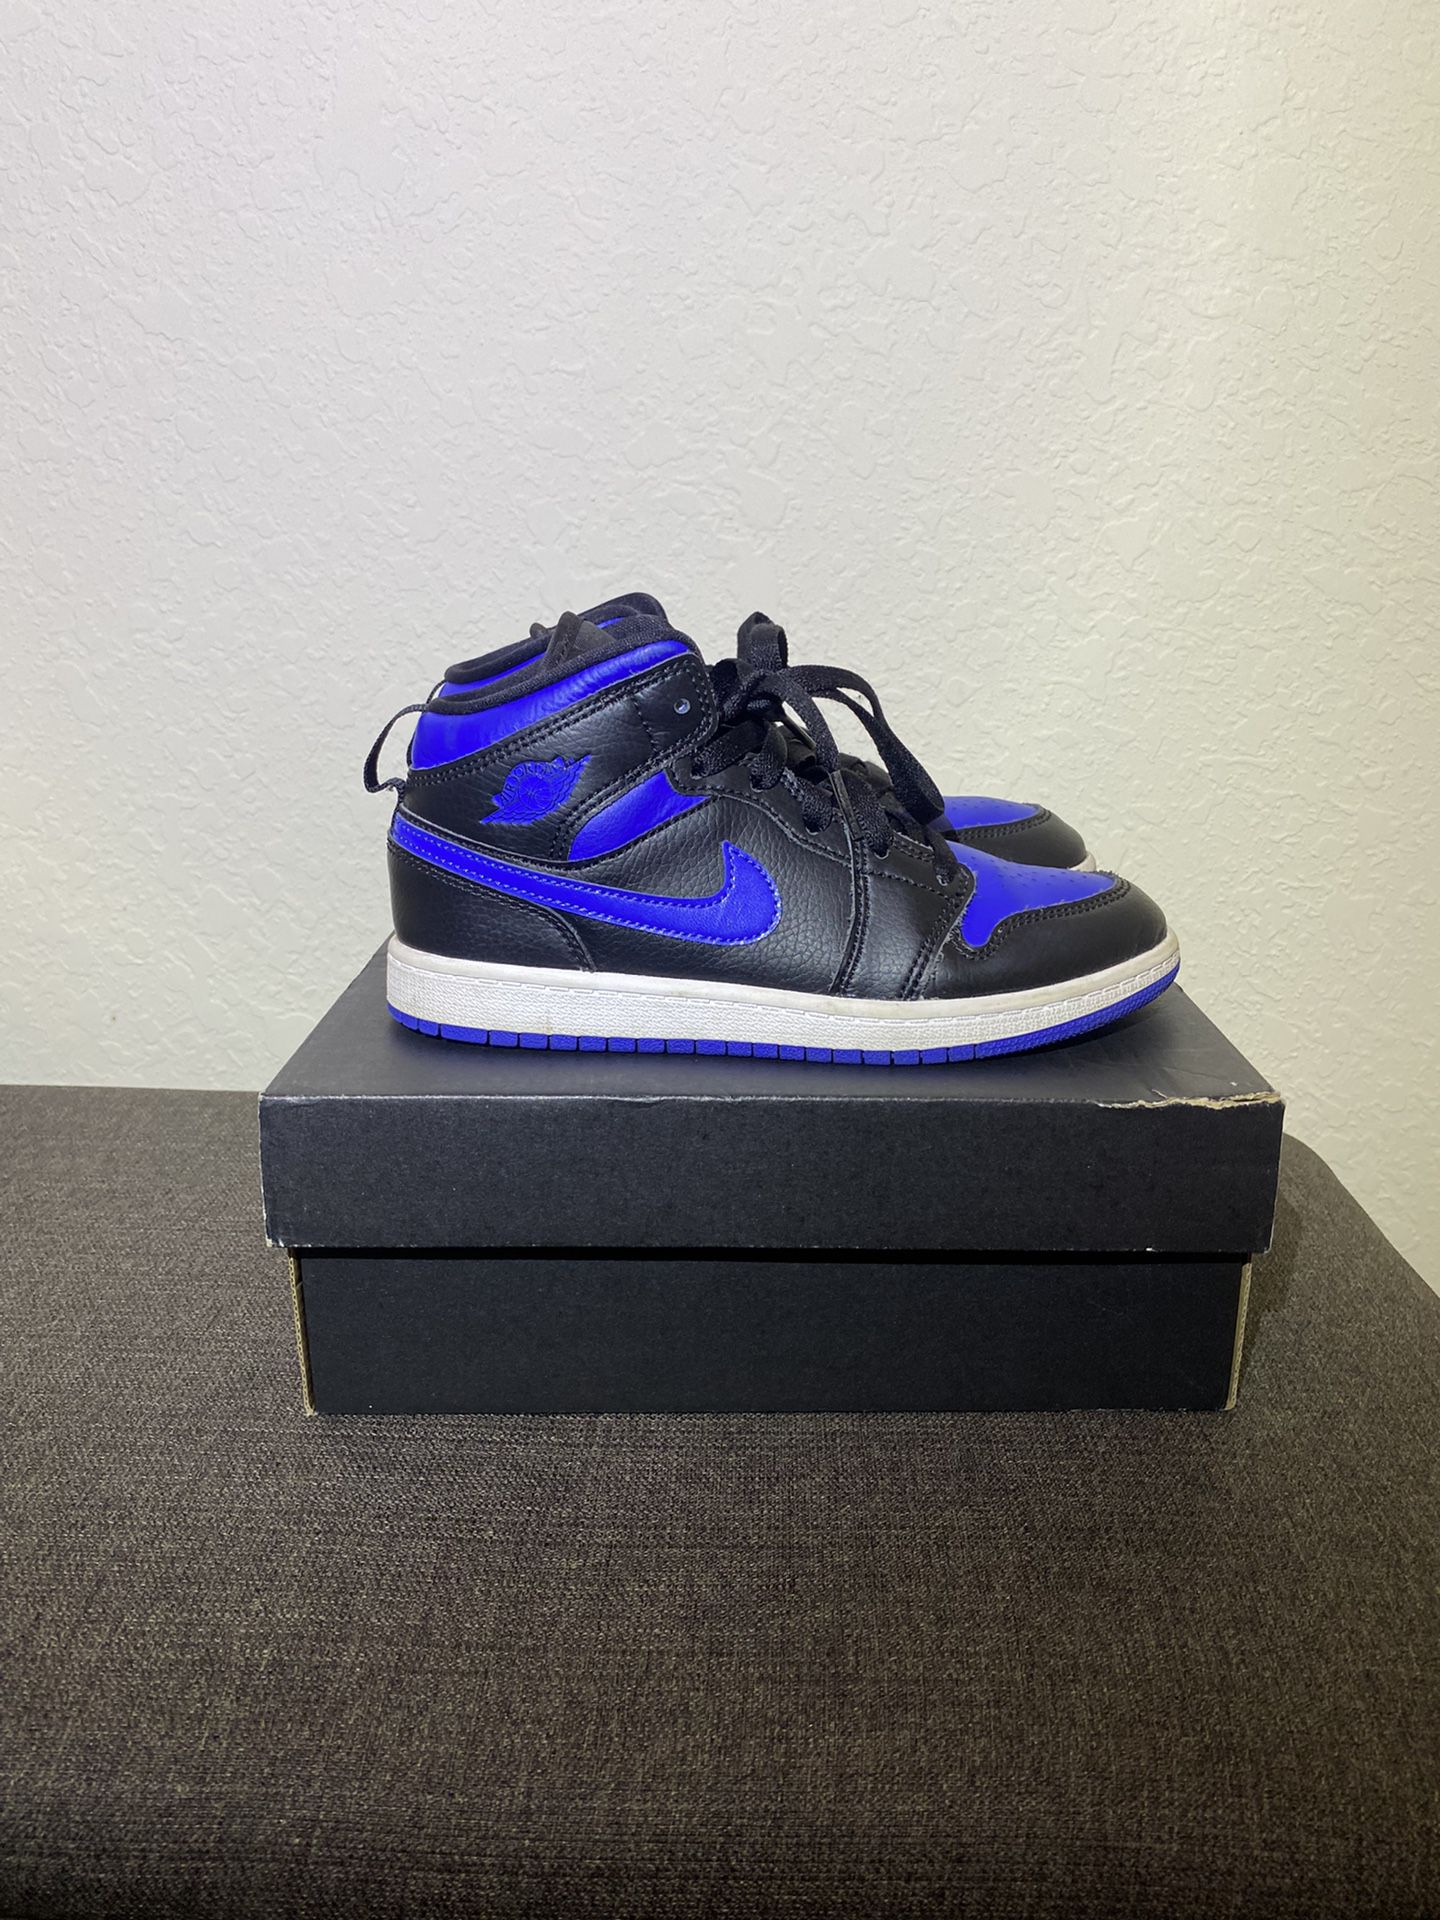 Jordan 1 Mid Royal Blue 9/10 Size 2.5 $40